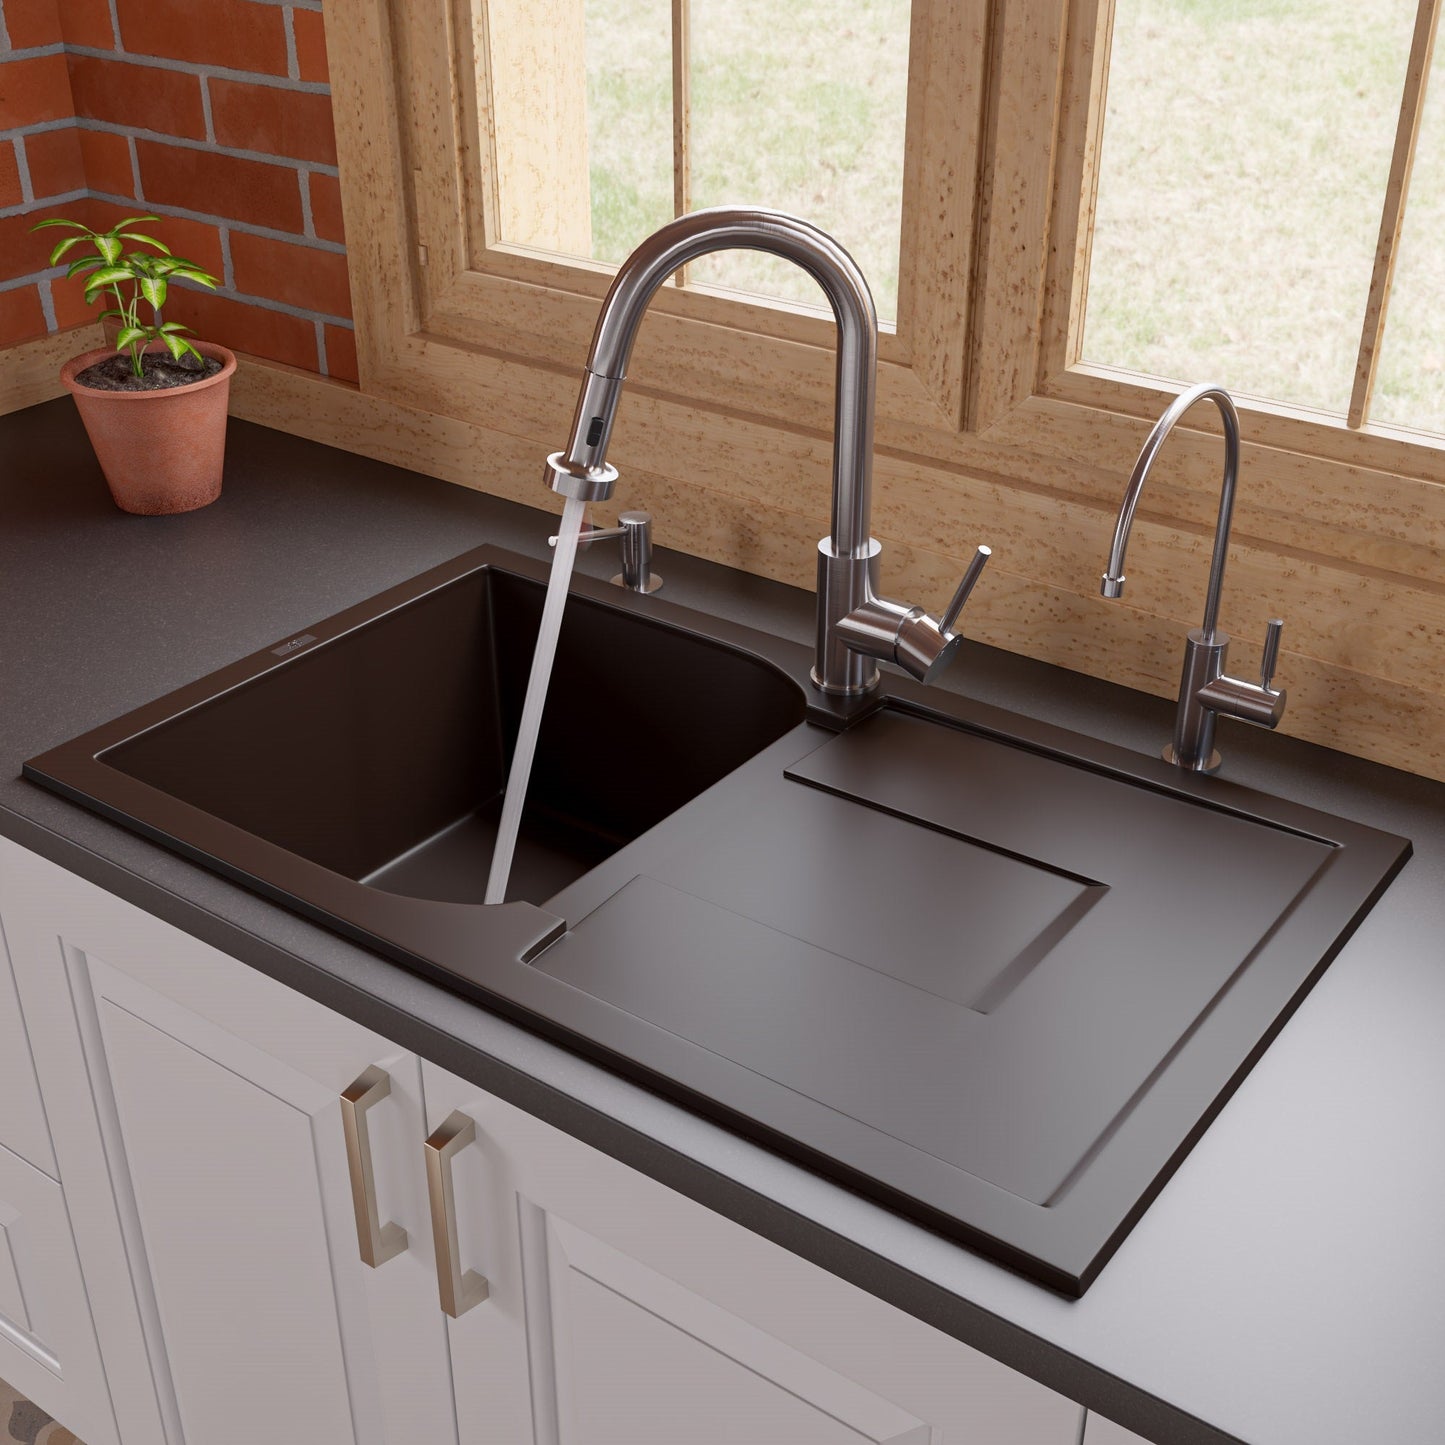 Alfi brand AB1620DI 34" Single Bowl Granite Composite Kitchen Sink with Drainboard